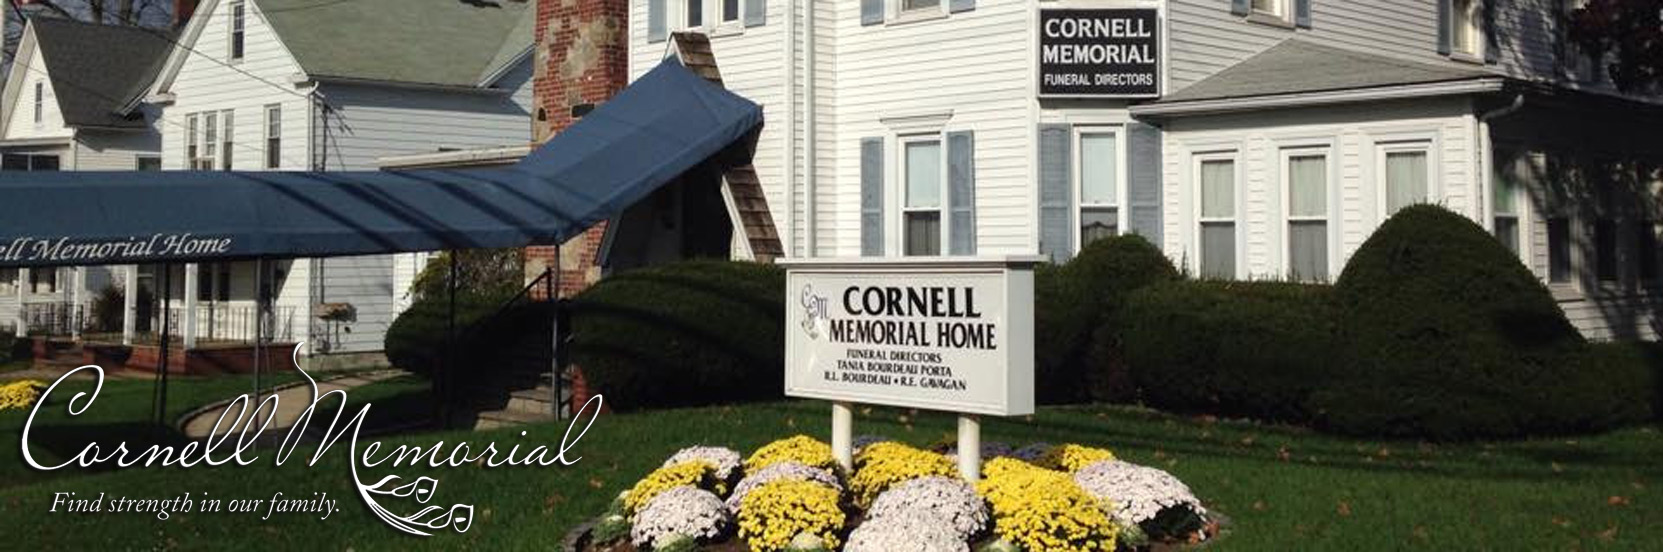 Cornell Memorial Home